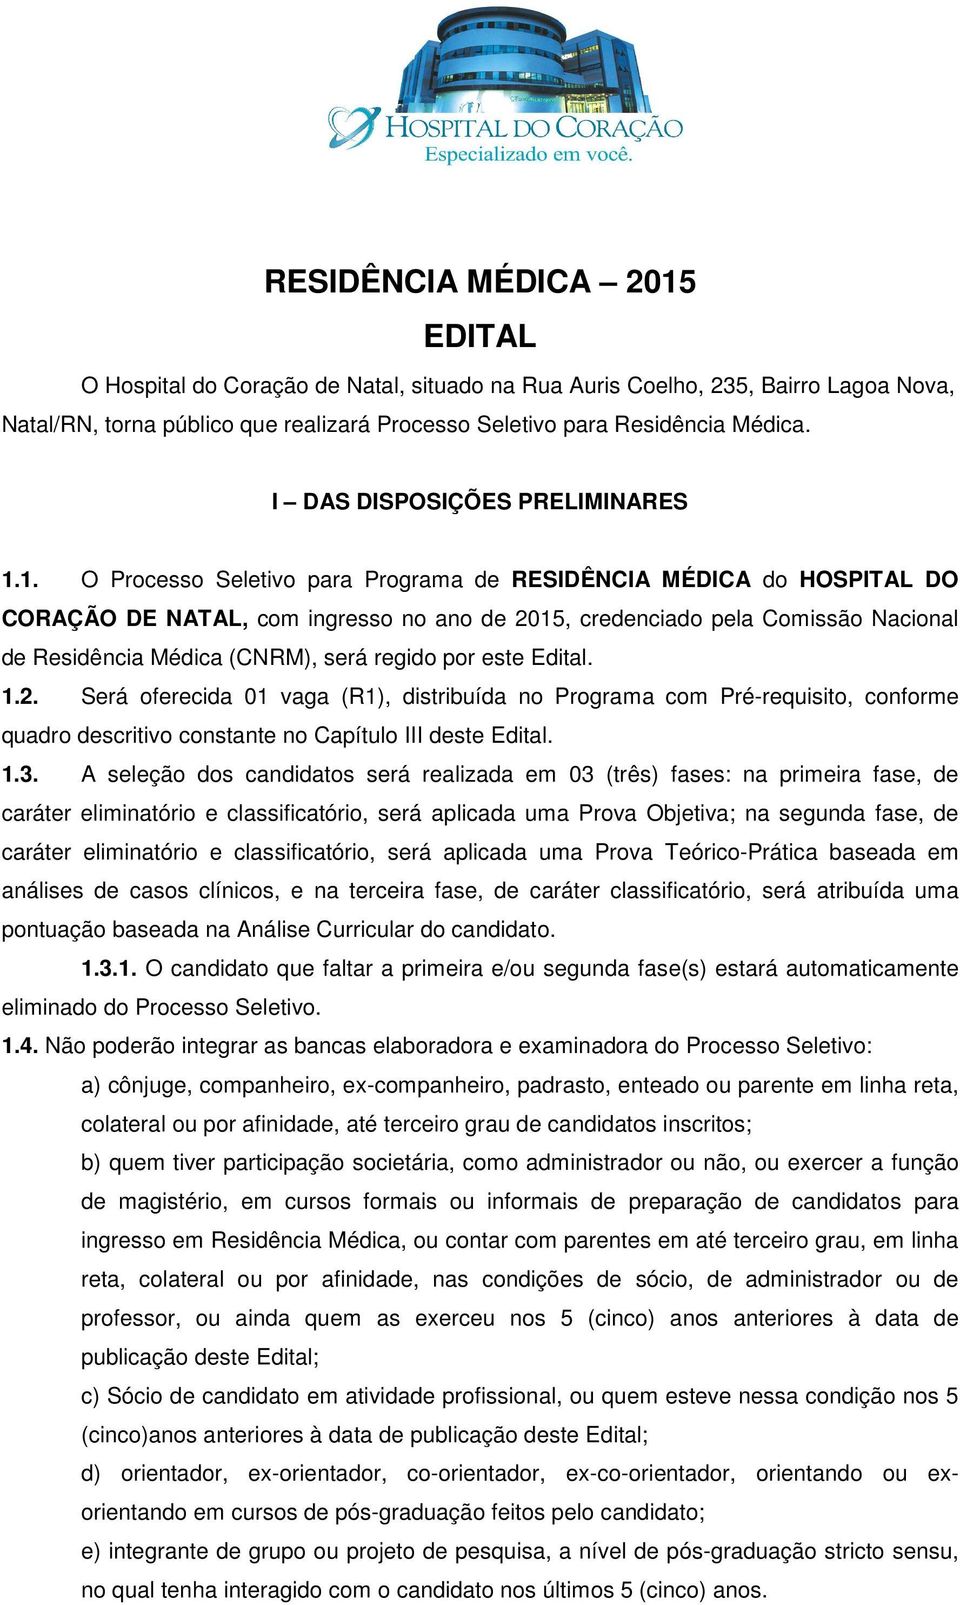 1. O Processo Seletivo para Programa de RESIDÊNCIA MÉDICA do HOSPITAL DO CORAÇÃO DE NATAL, com ingresso no ano de 2015, credenciado pela Comissão Nacional de Residência Médica (CNRM), será regido por